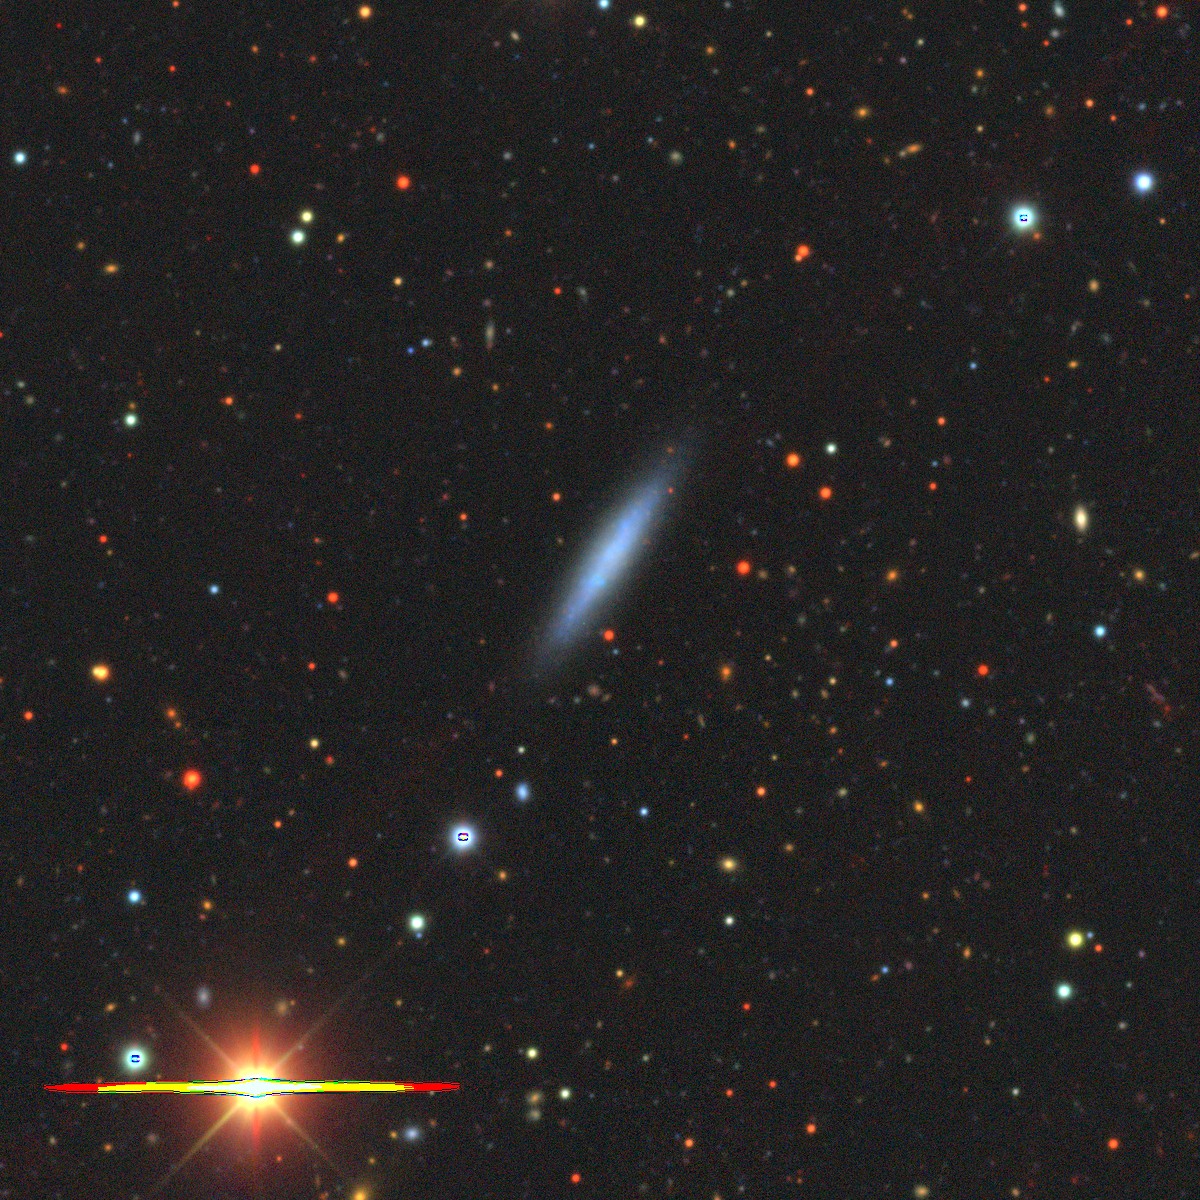 ESO289-020